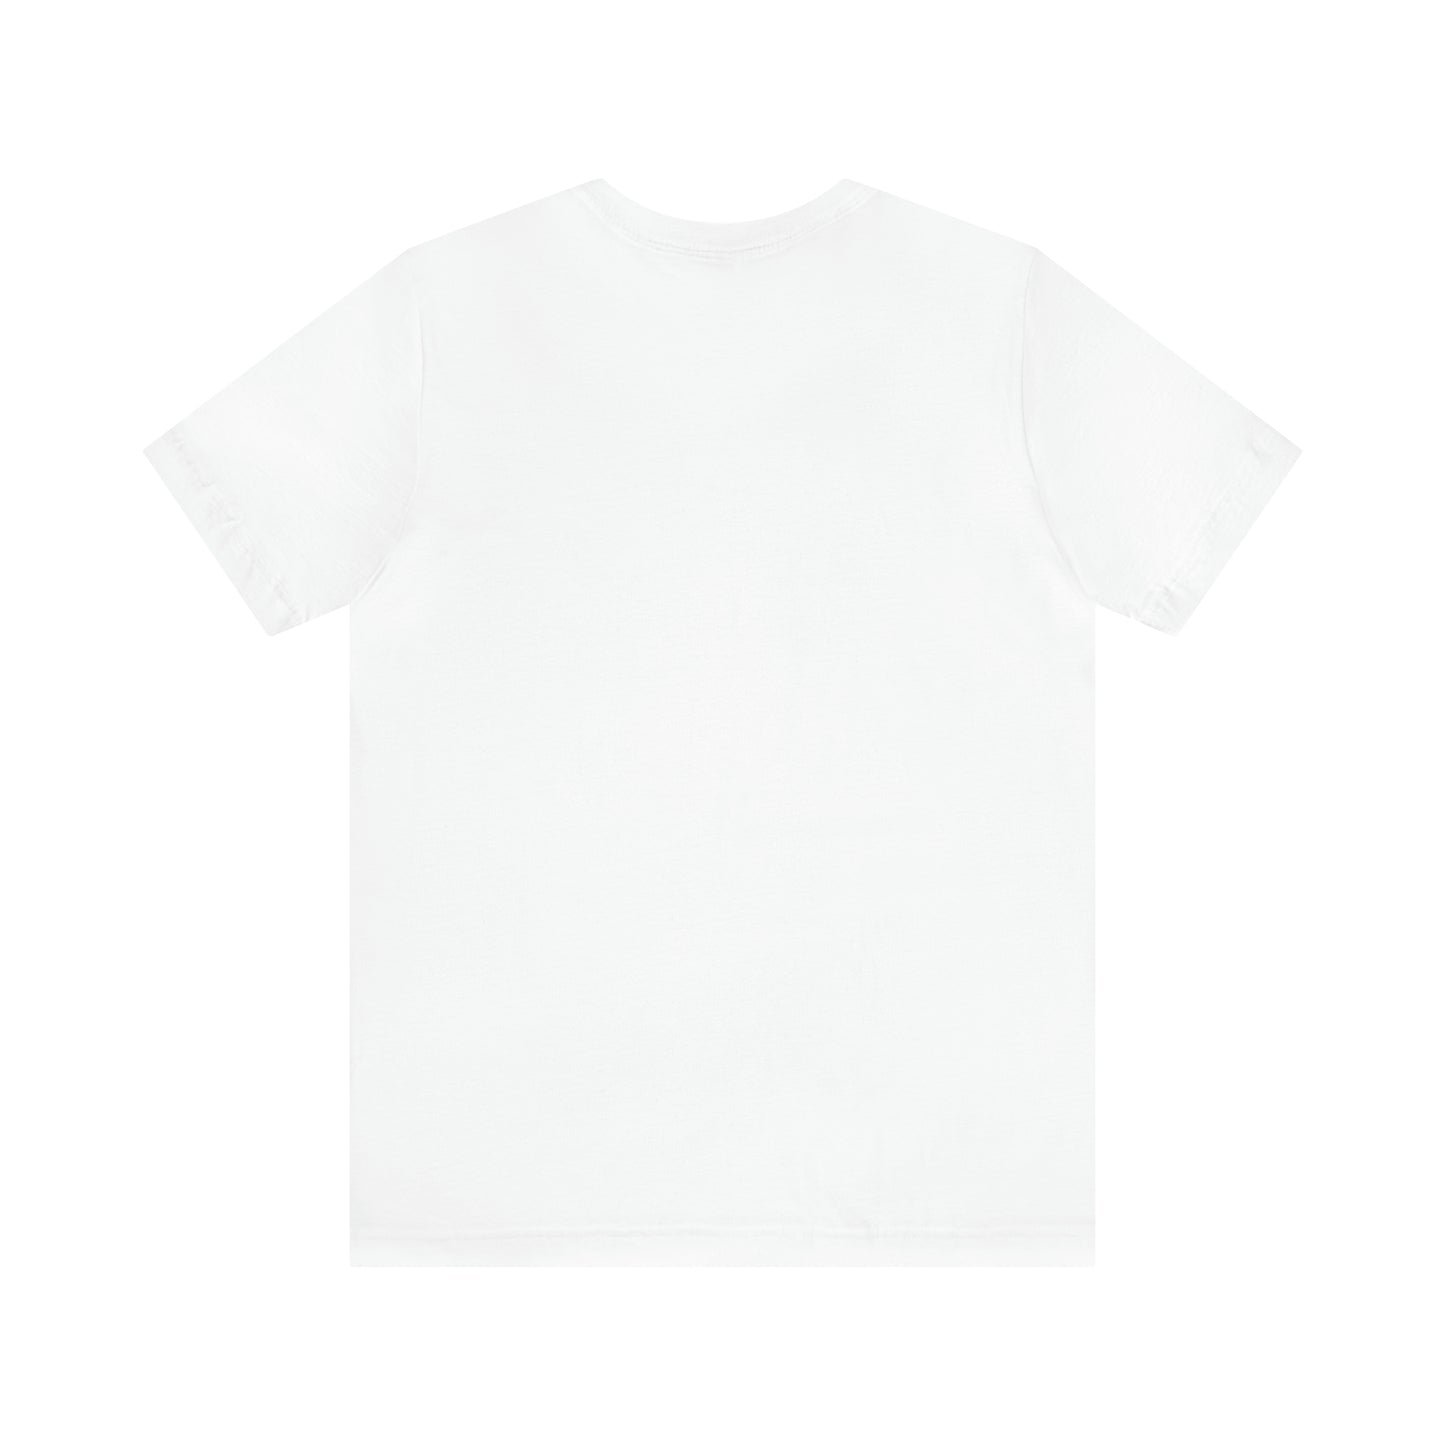 Just Chill - Lemonade Daydream Pop Art Premium White T-Shirt